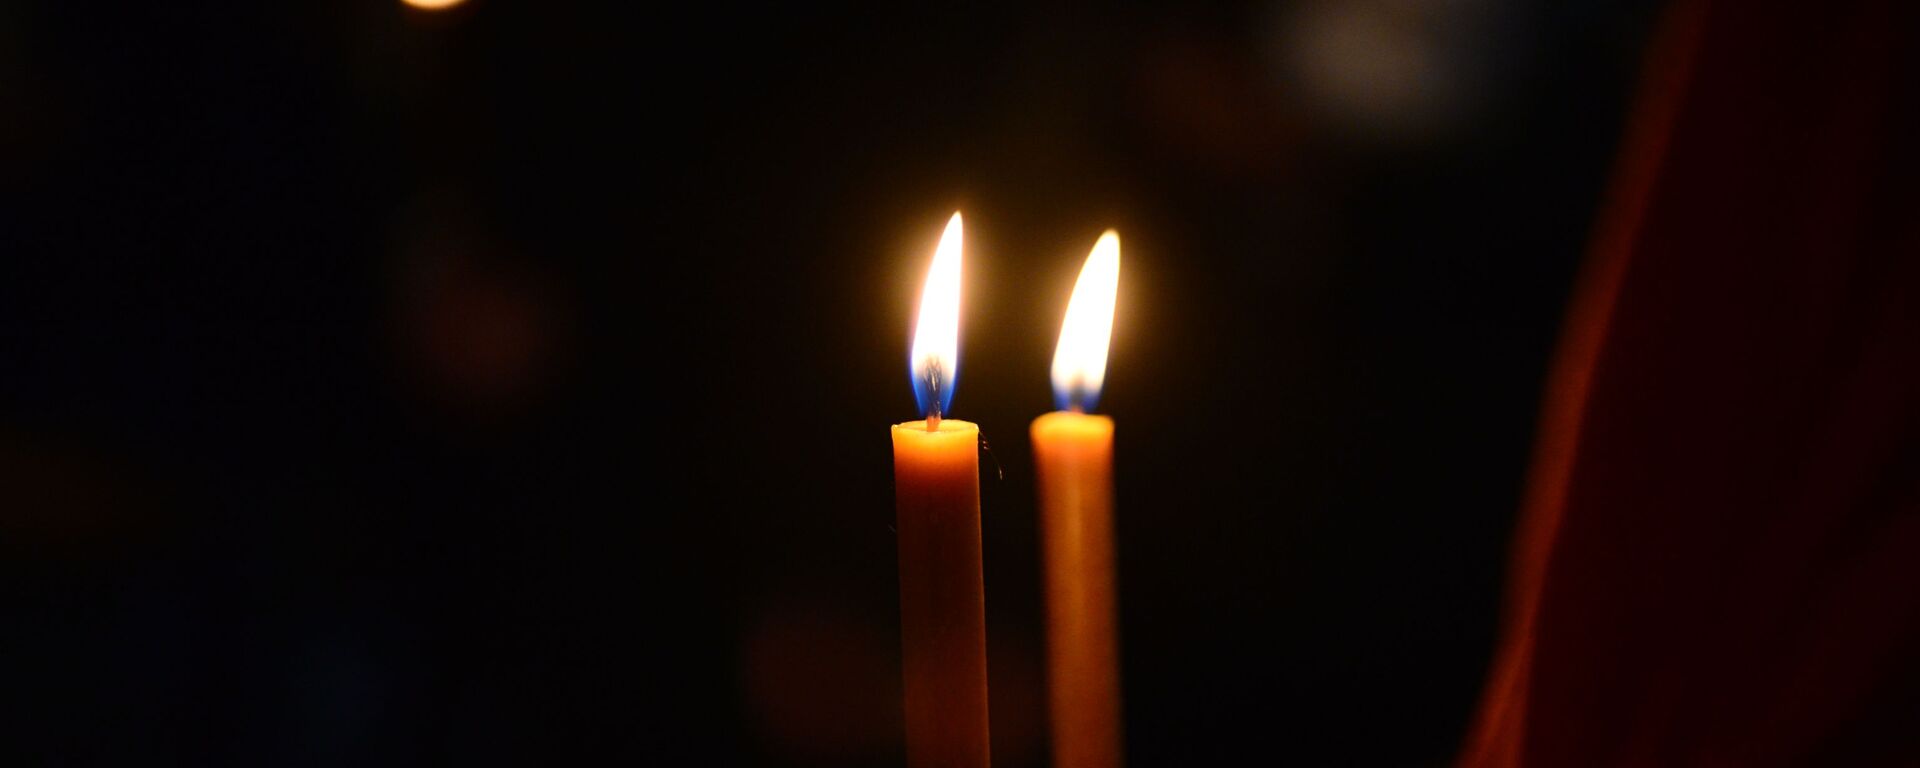 Зажженные в церкви свечи - Sputnik Грузия, 1920, 27.12.2020